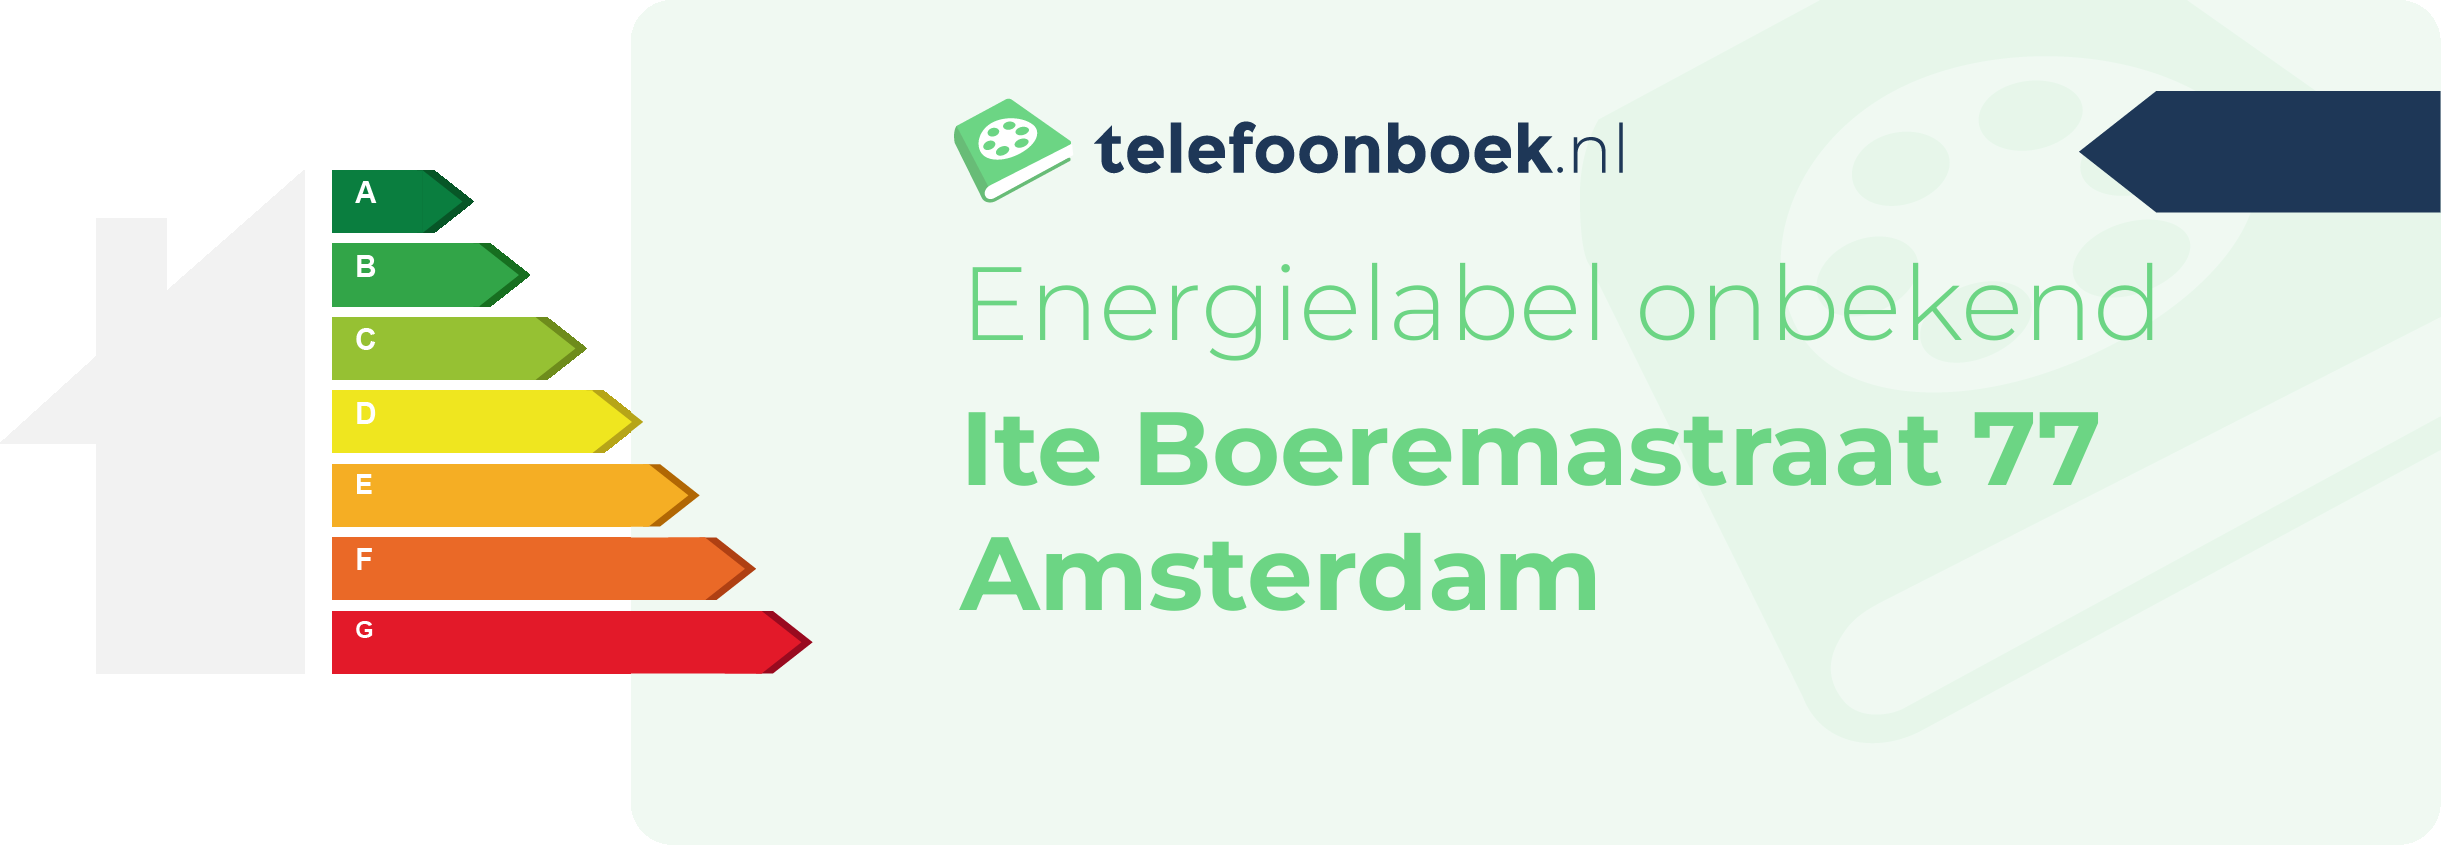 Energielabel Ite Boeremastraat 77 Amsterdam